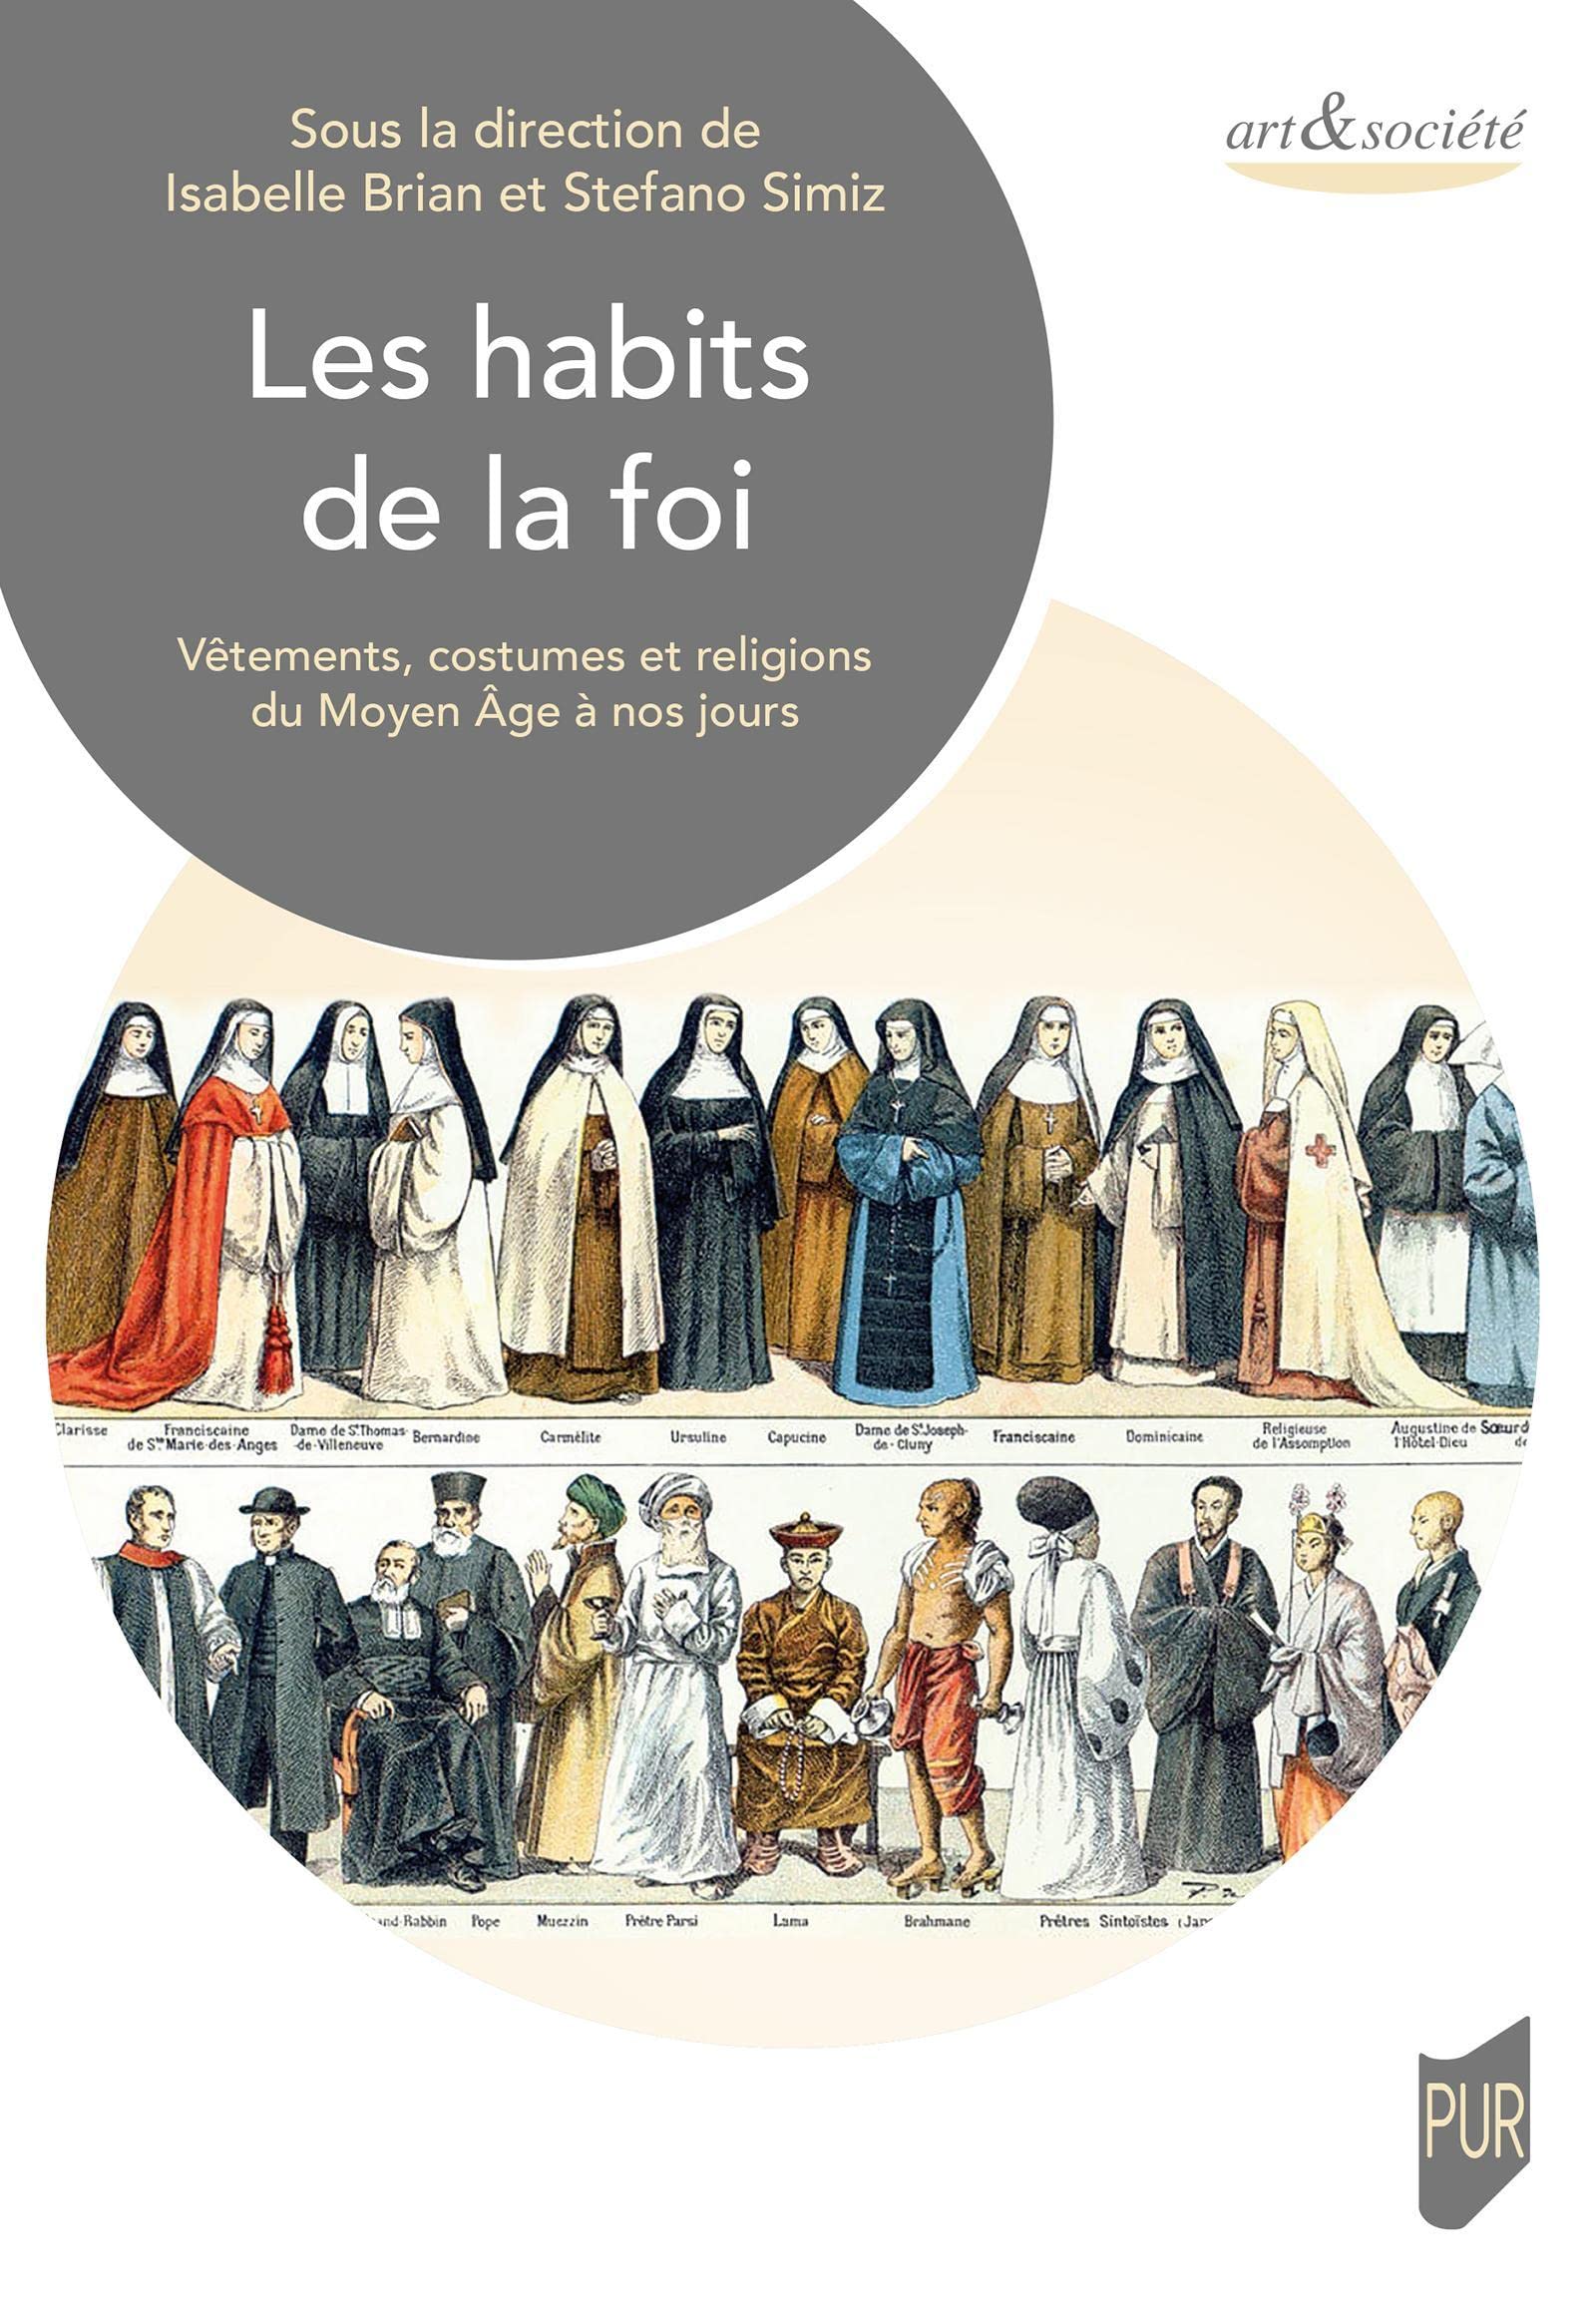 Les habits de la foi. Vêtements, costumes et religions du Moyen-Âge à nos jours, 2022, 322 p.